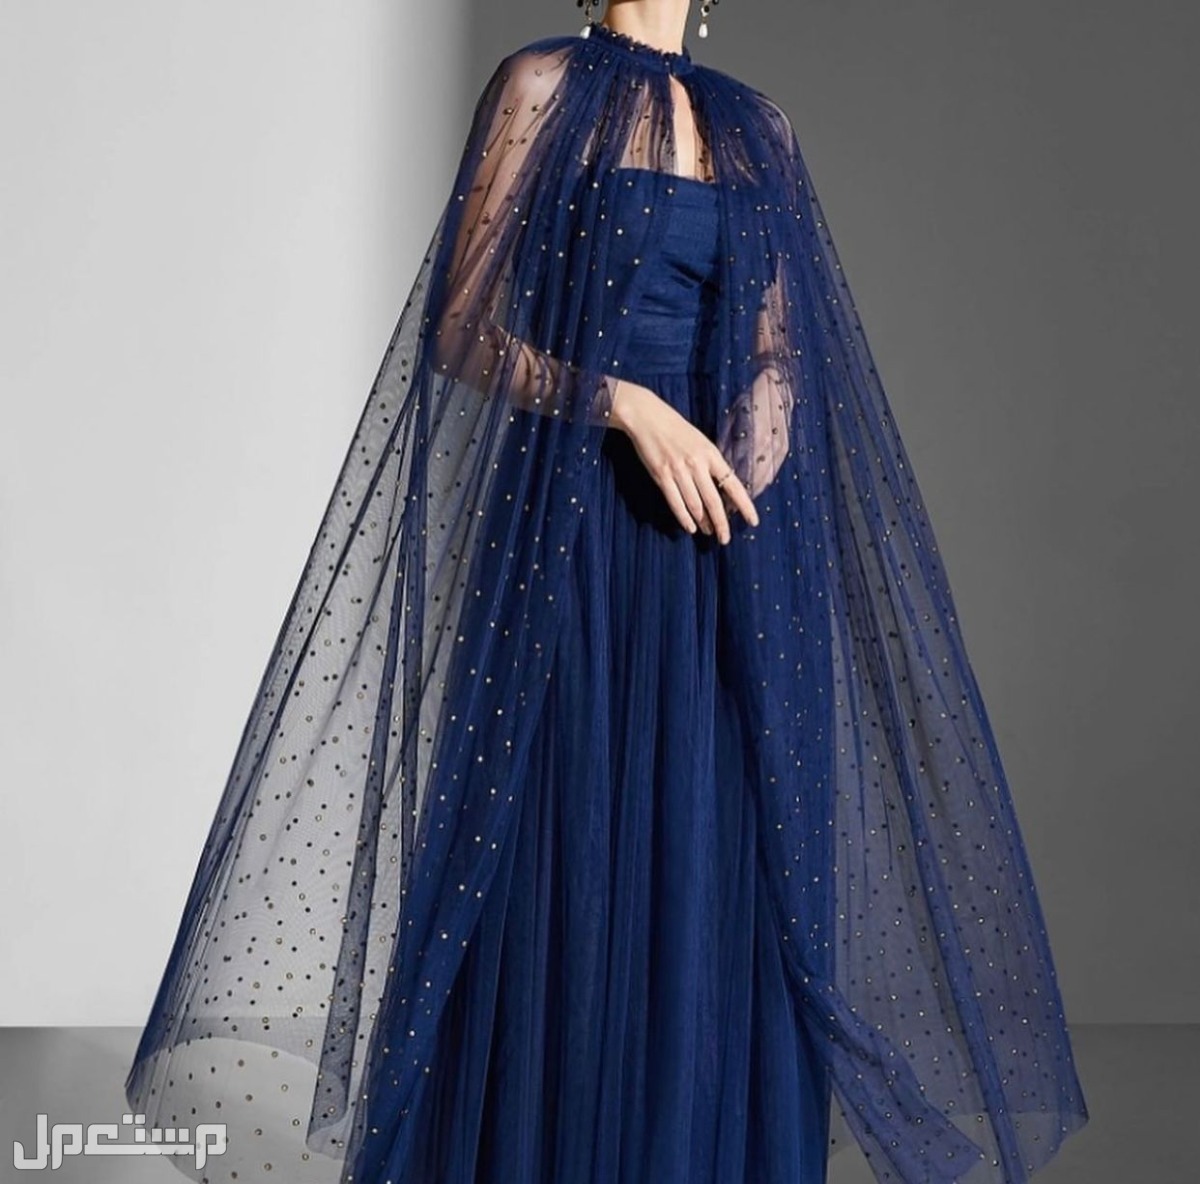 الجديد وصل بأحدث التصاميم وبأقل الأسعار اجمل واروع الفساتين  في مكة المكرمة بسعر 200 ريال سعودي